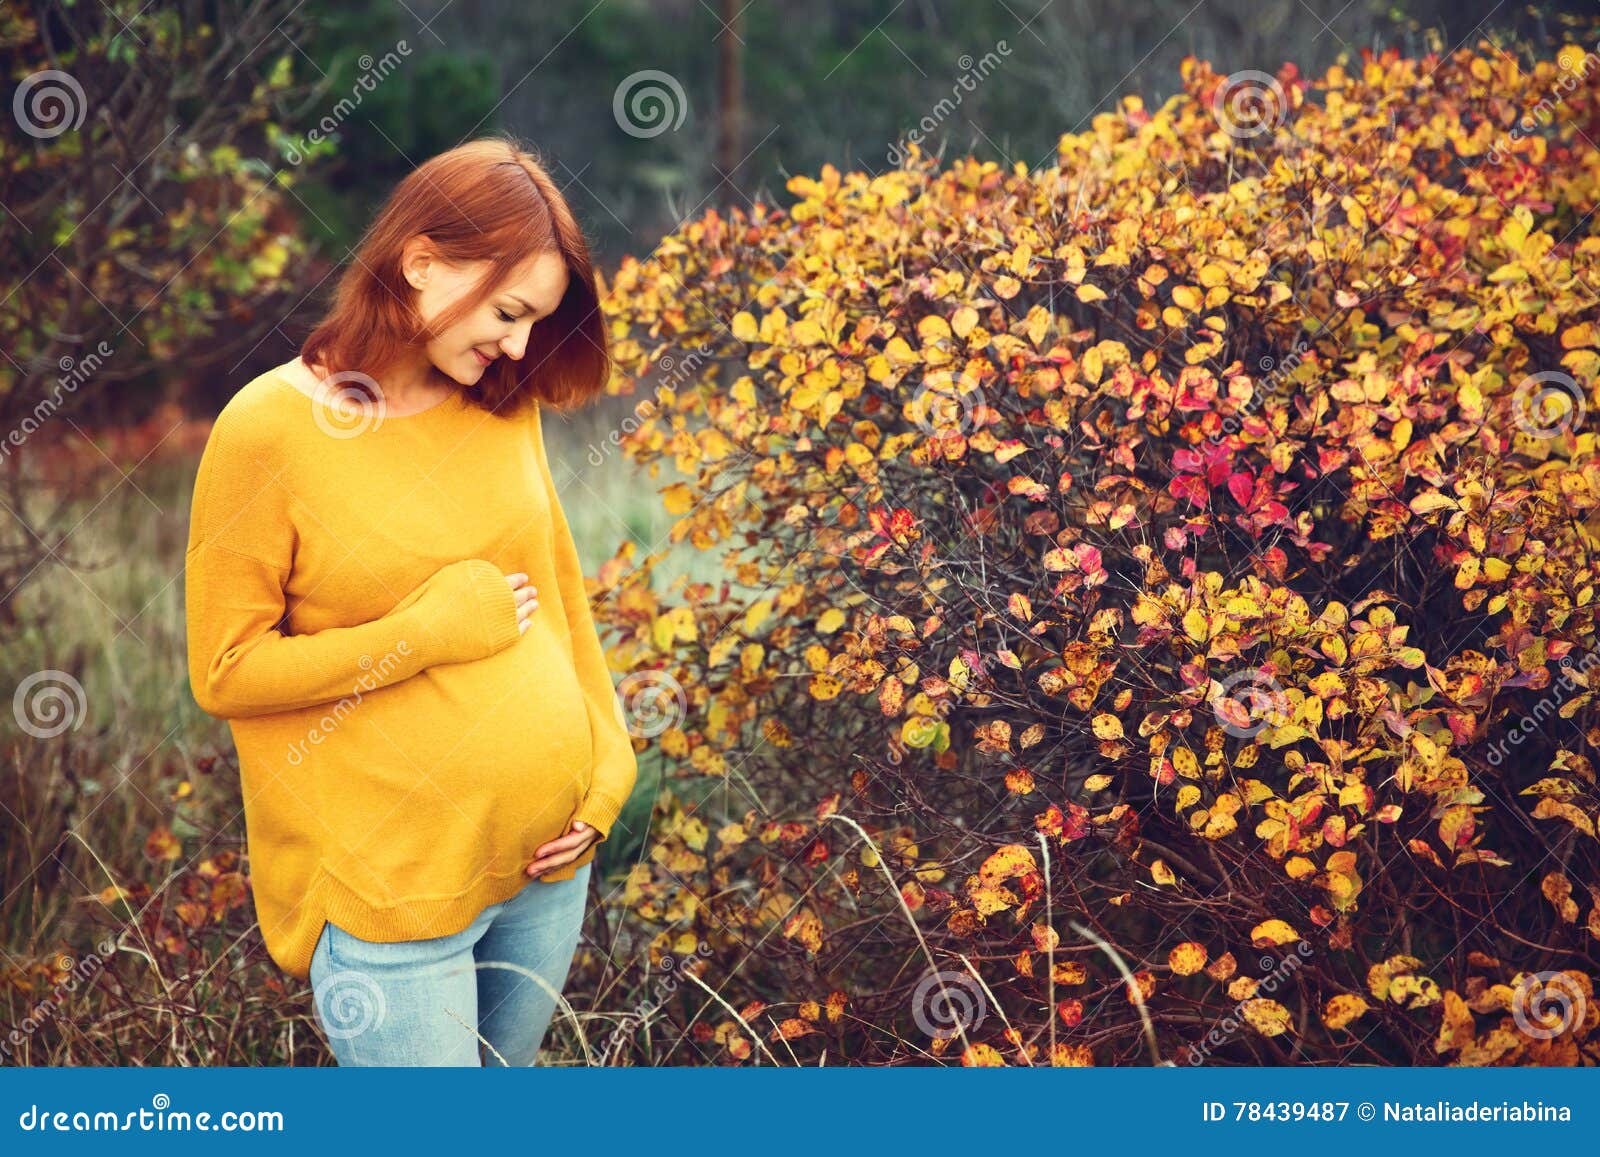 时尚孕妇装秋冬月子服休闲纯色孕妇家居服哺乳衣外出孕妇套装批发-阿里巴巴